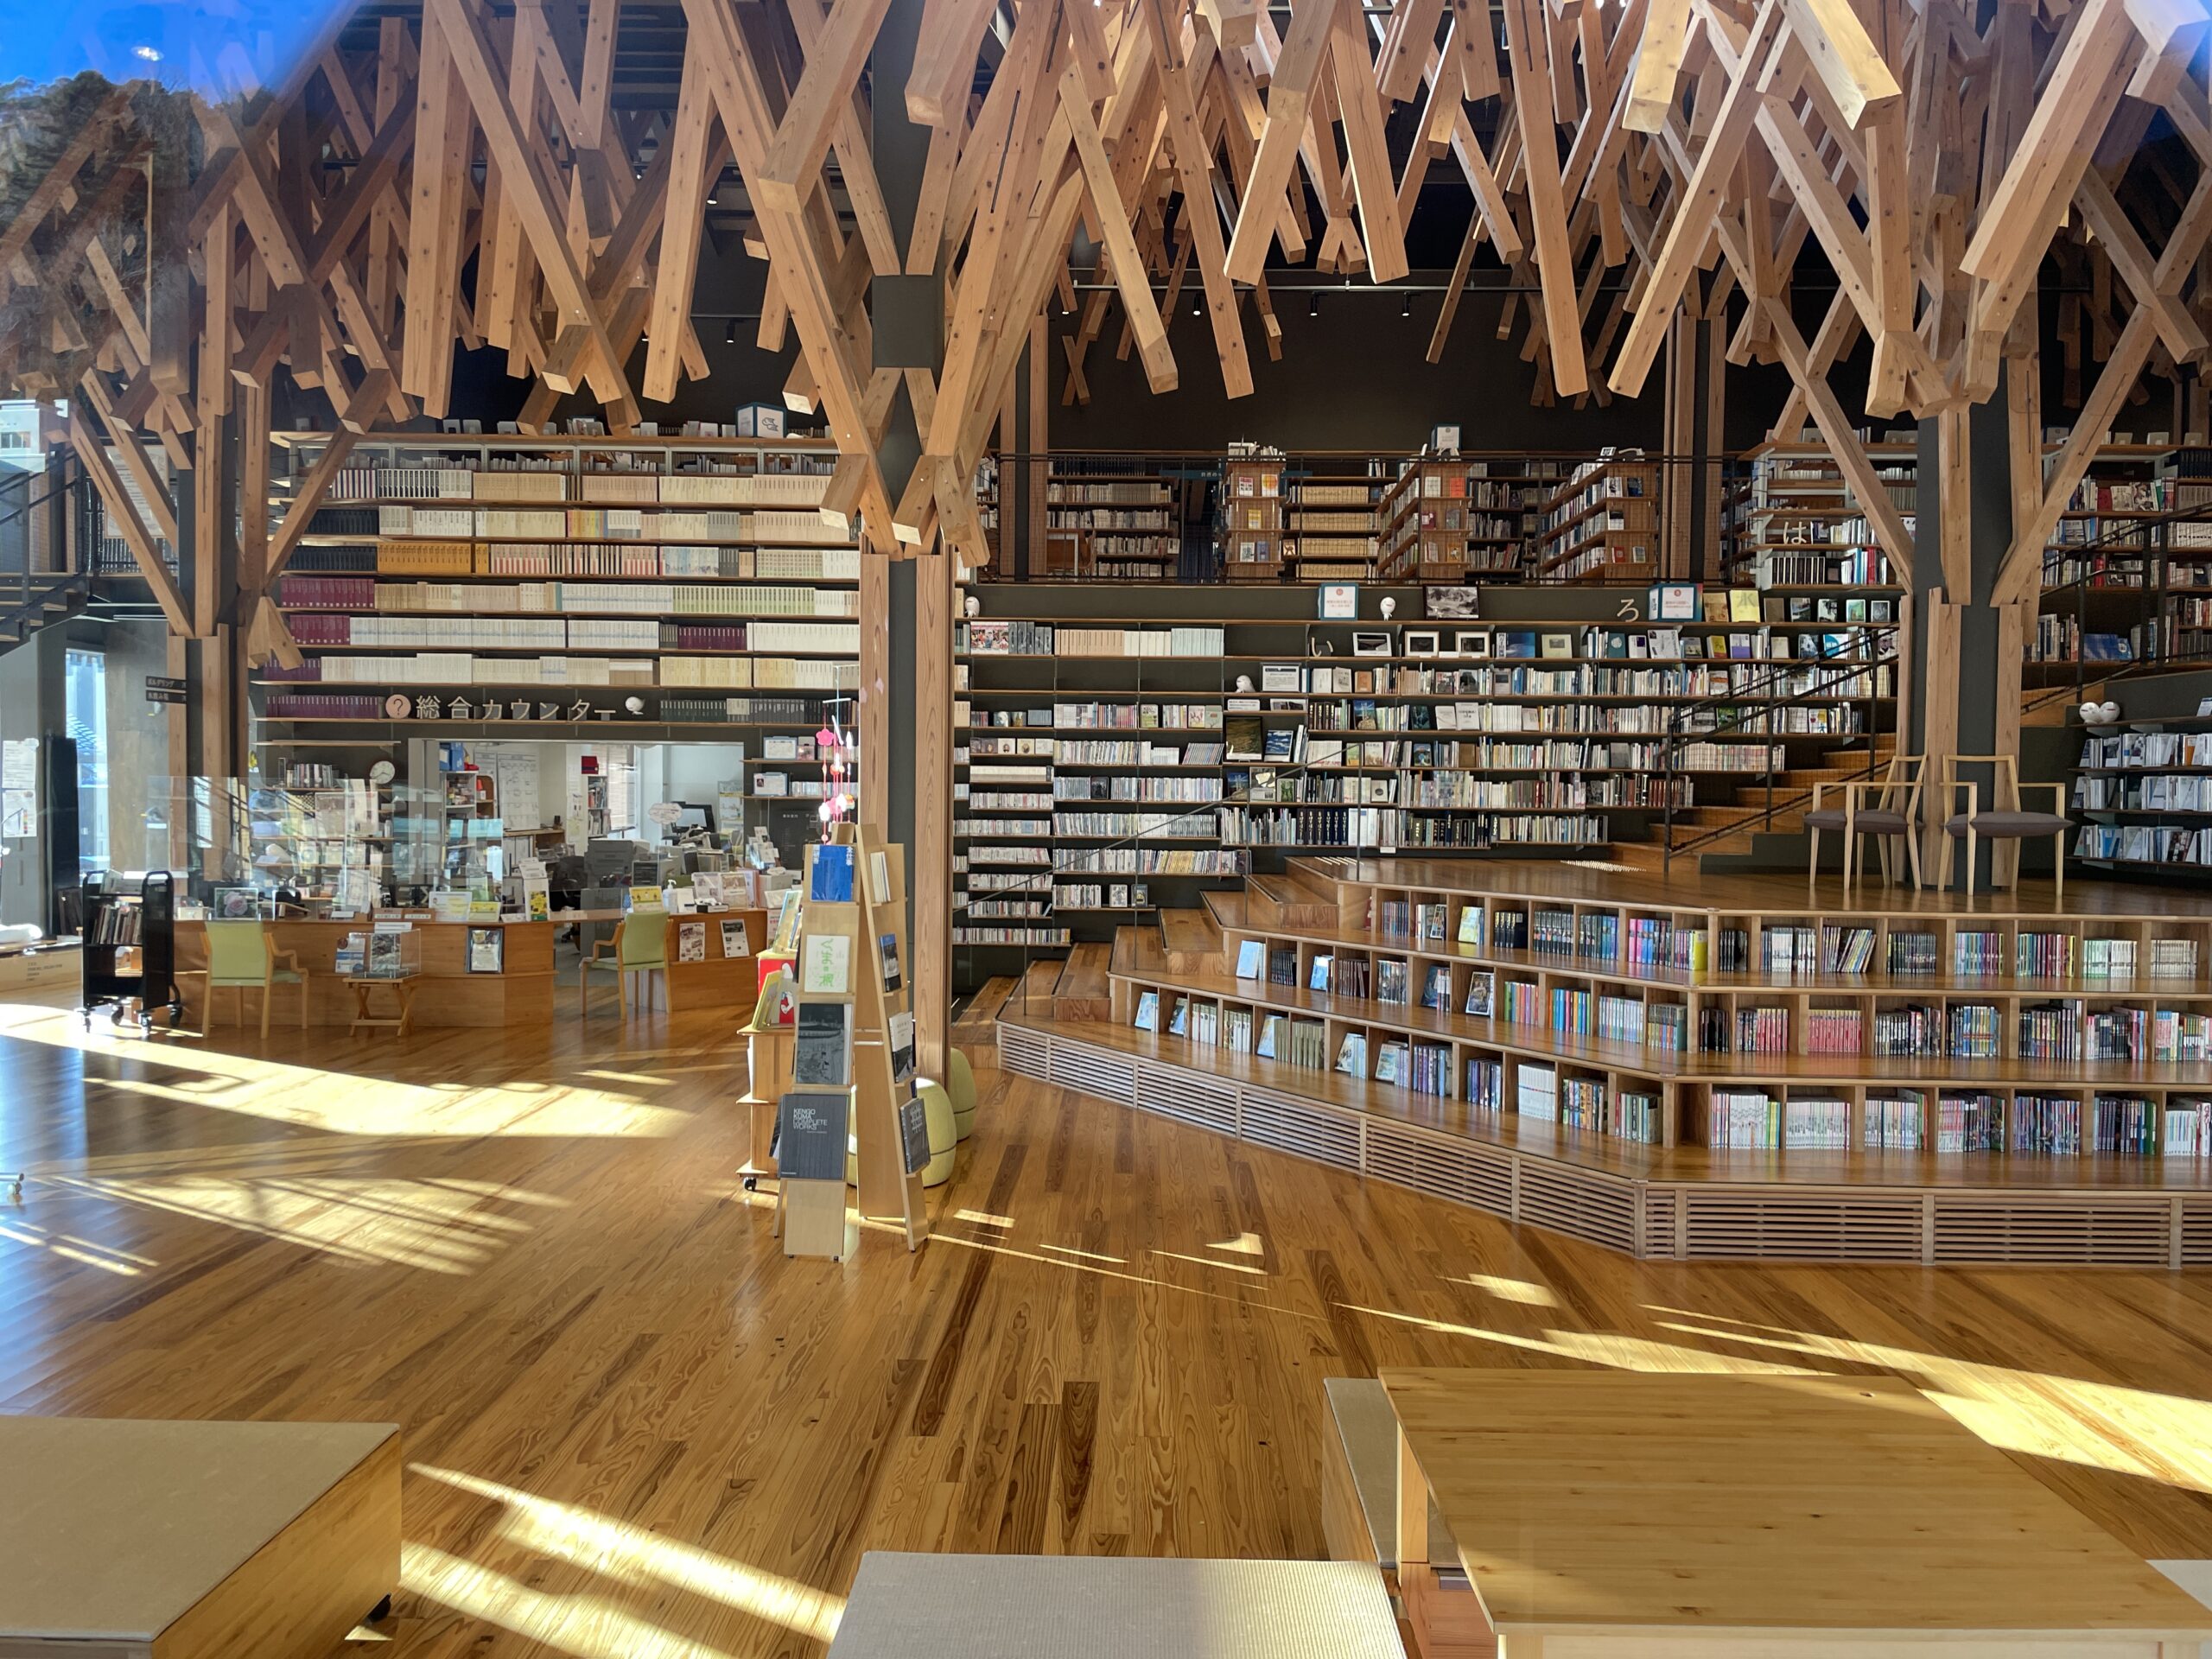 Beeindruckend: Das Innere der Bibliothek